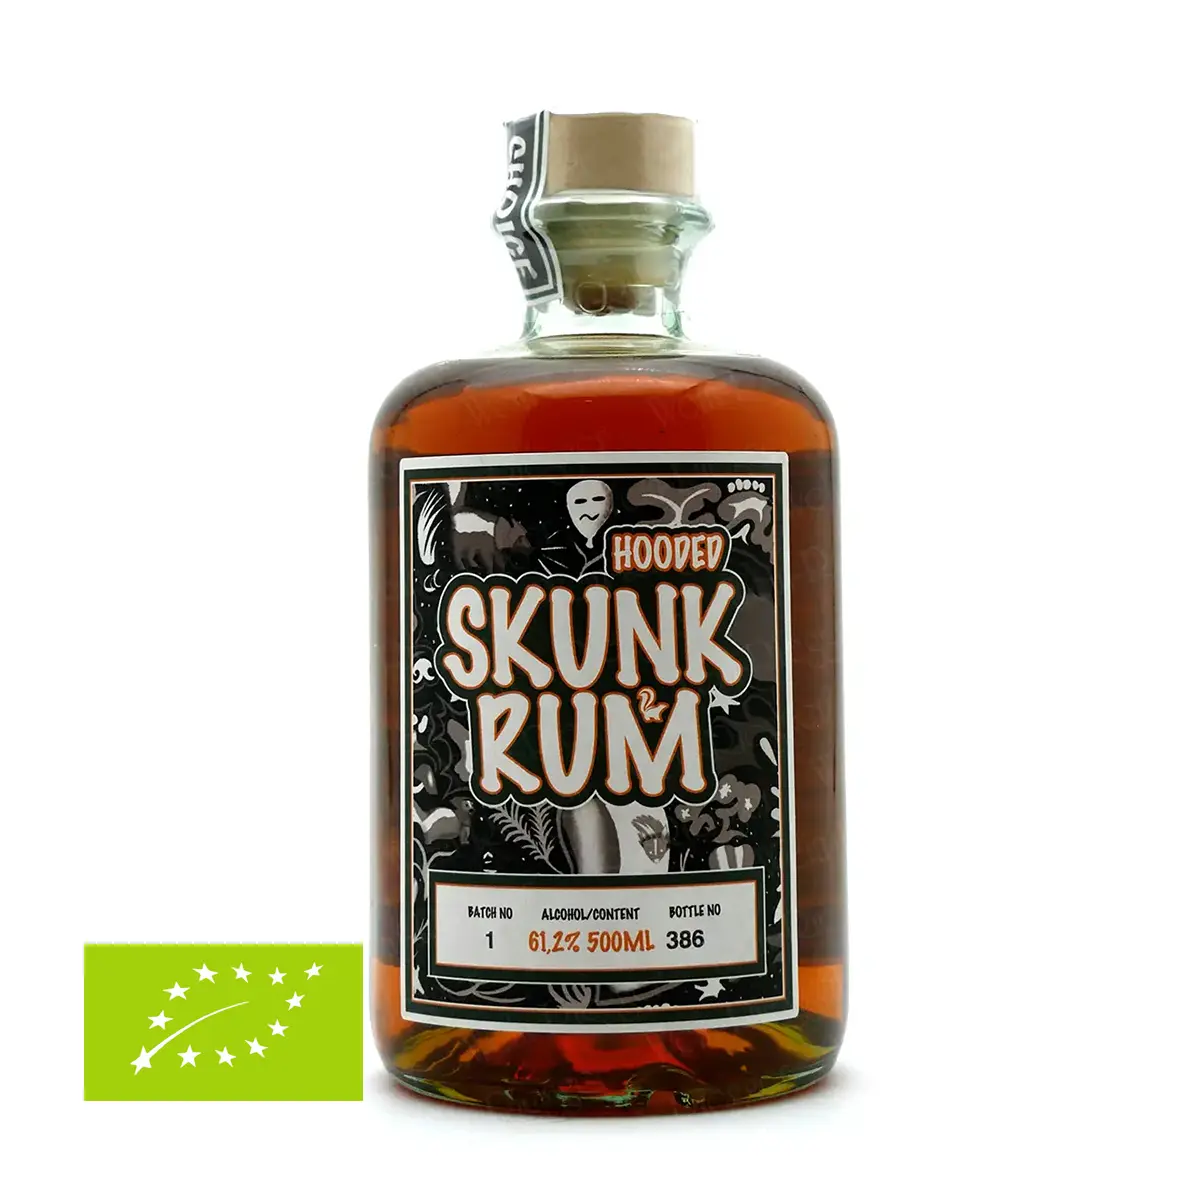 Skunk Rum | HOODED